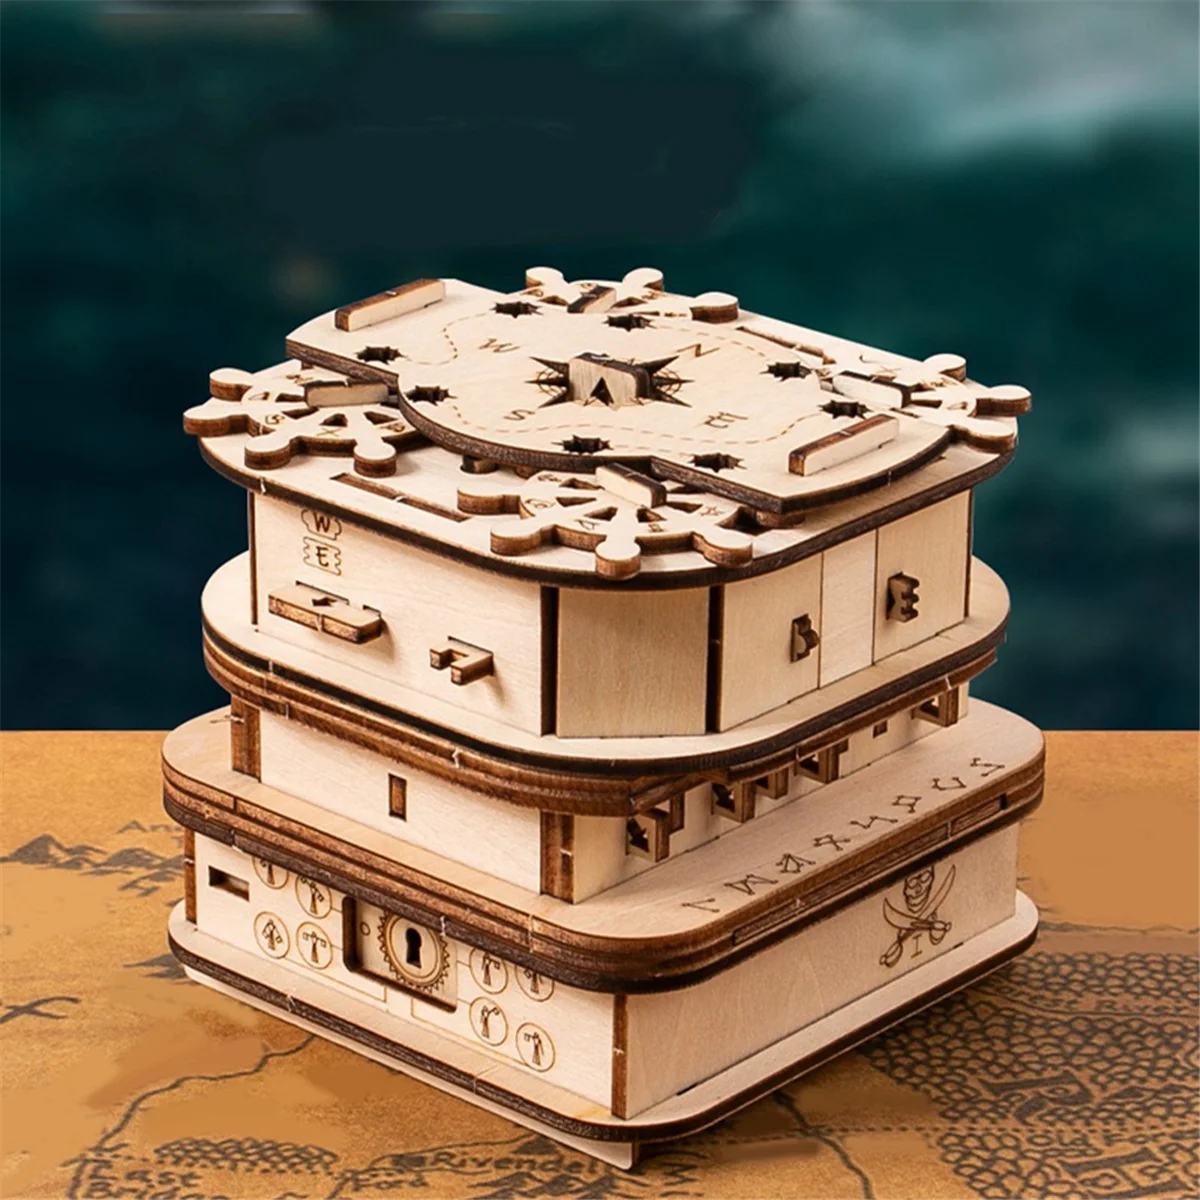 Davy Jones'Locker 퍼즐 상자, 선물 상자, 나무 퍼즐, 성인용 나무 퍼즐, 두뇌 티저, 남성용 생일 선물 도구